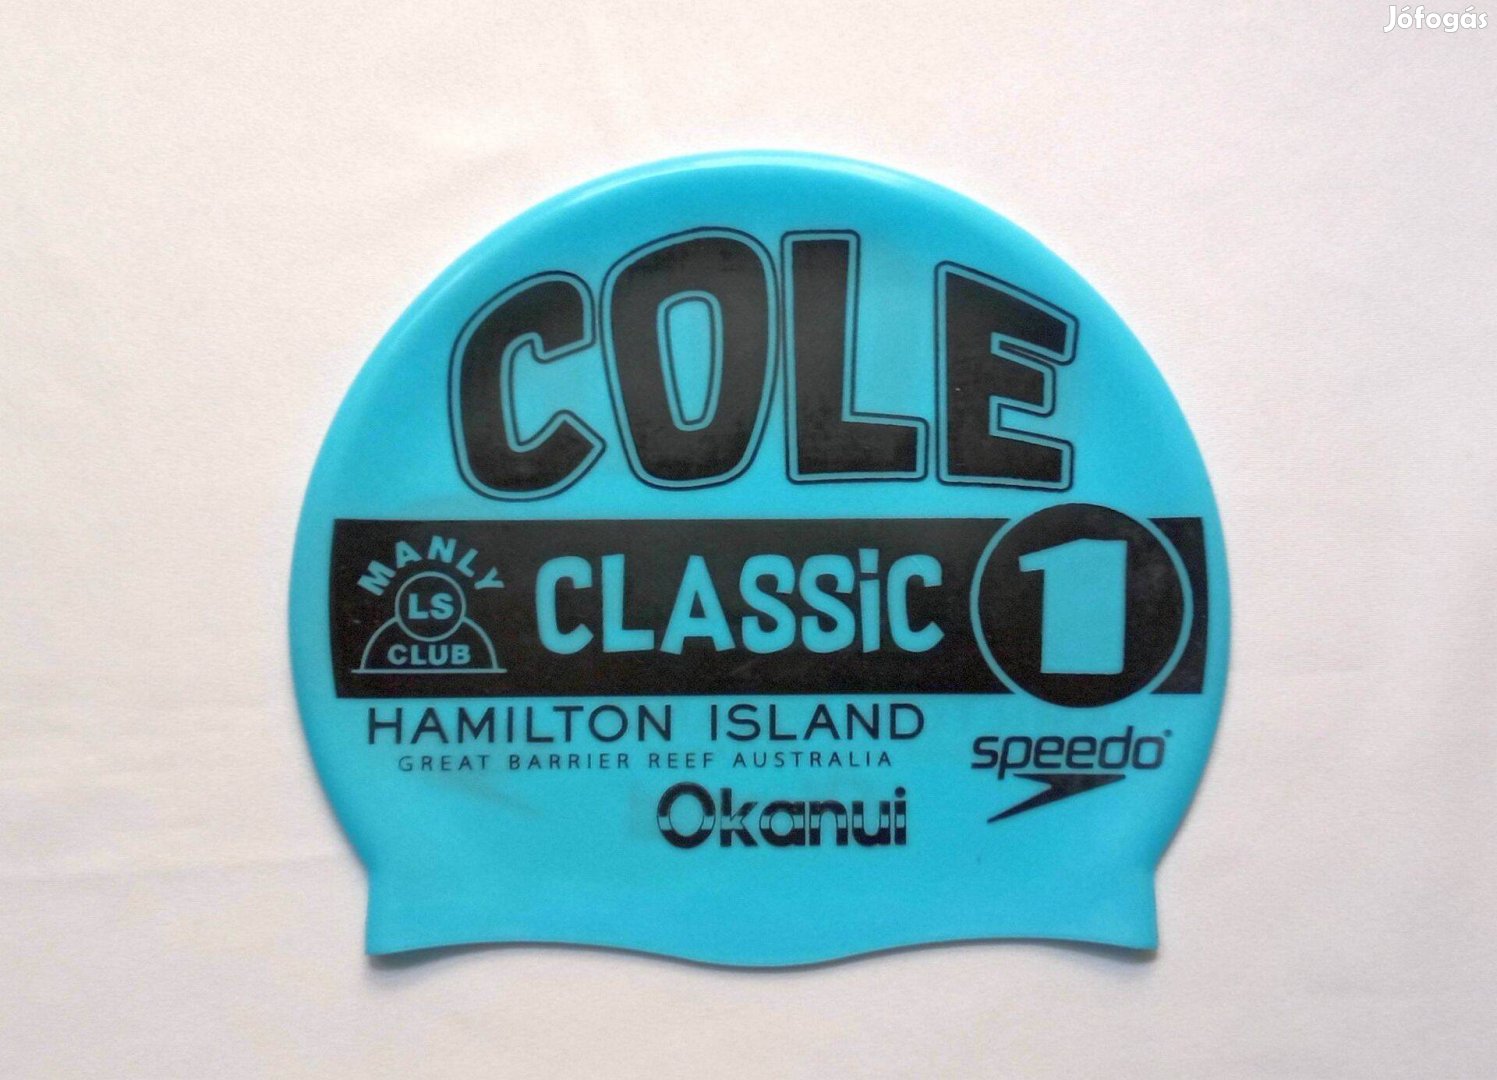 Világoskék Speedo úszósapka Cole Classic Manly Hamilton Island felirat